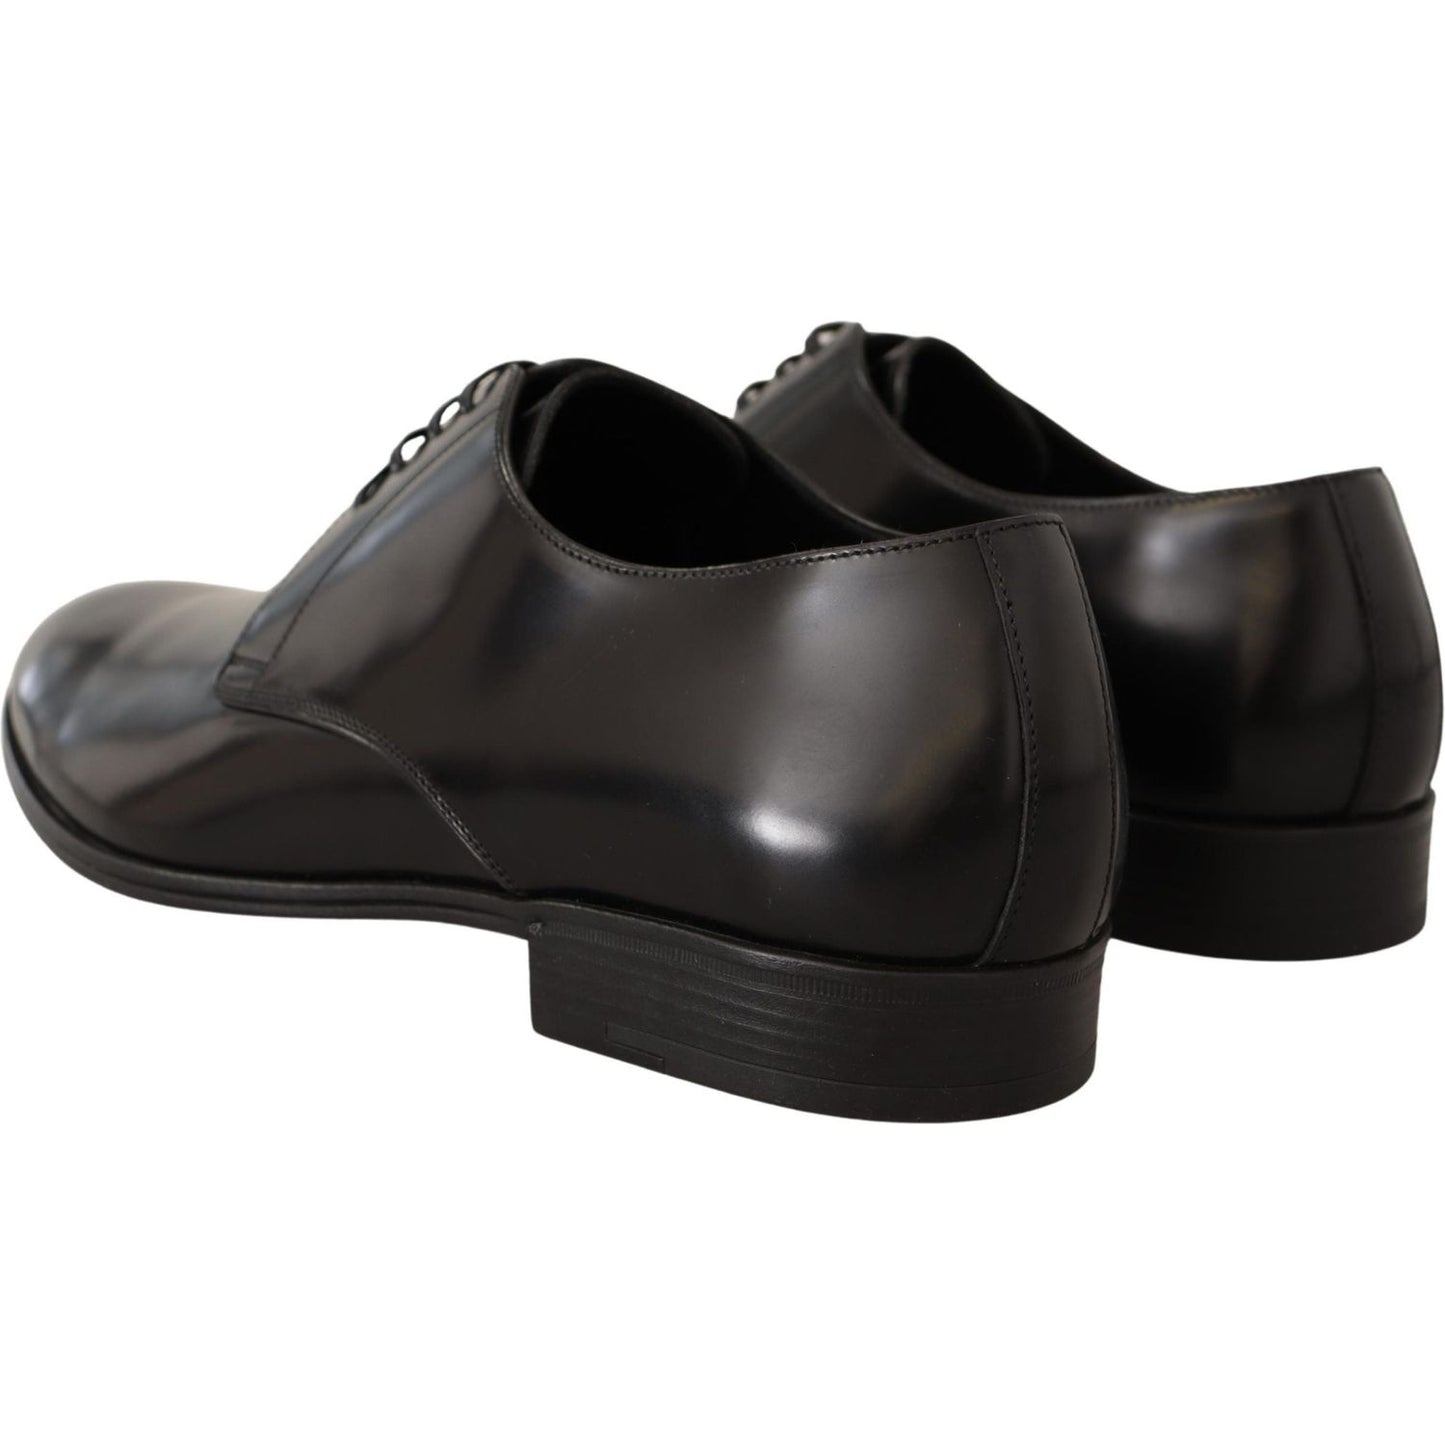 Dolce & Gabbana Elegant Black Leather Derby Shoes Dress Shoes black-leather-lace-up-men-dress-derby-shoes-2